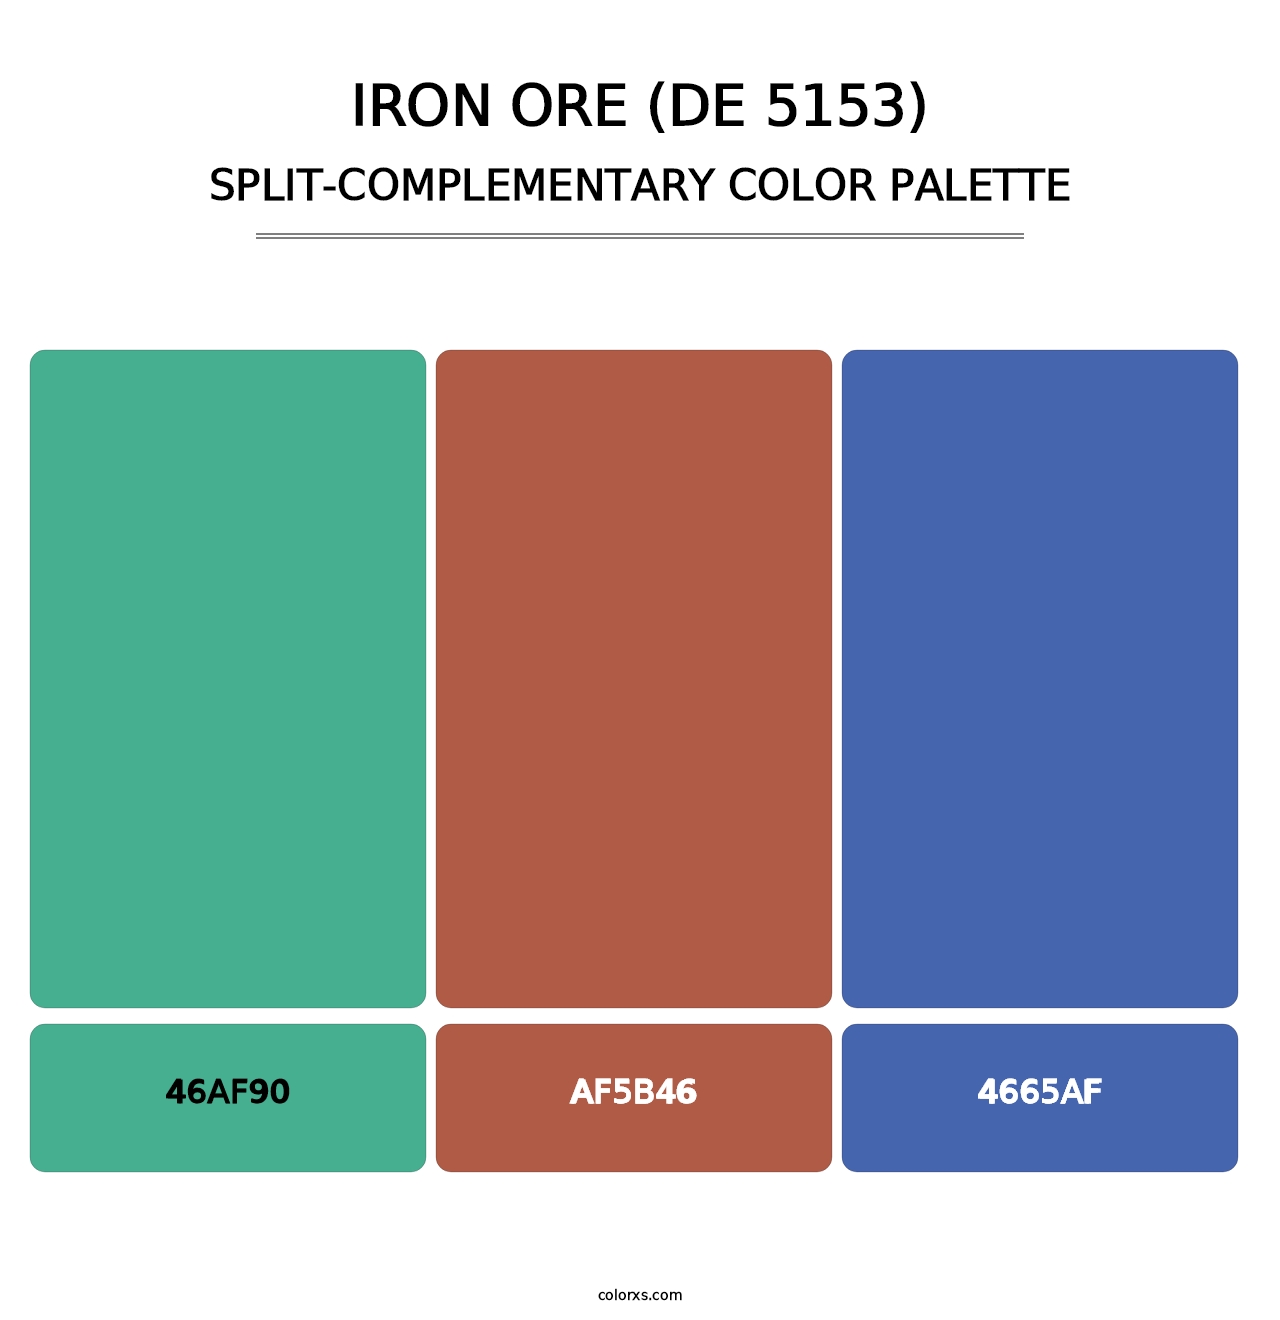 Iron Ore (DE 5153) - Split-Complementary Color Palette